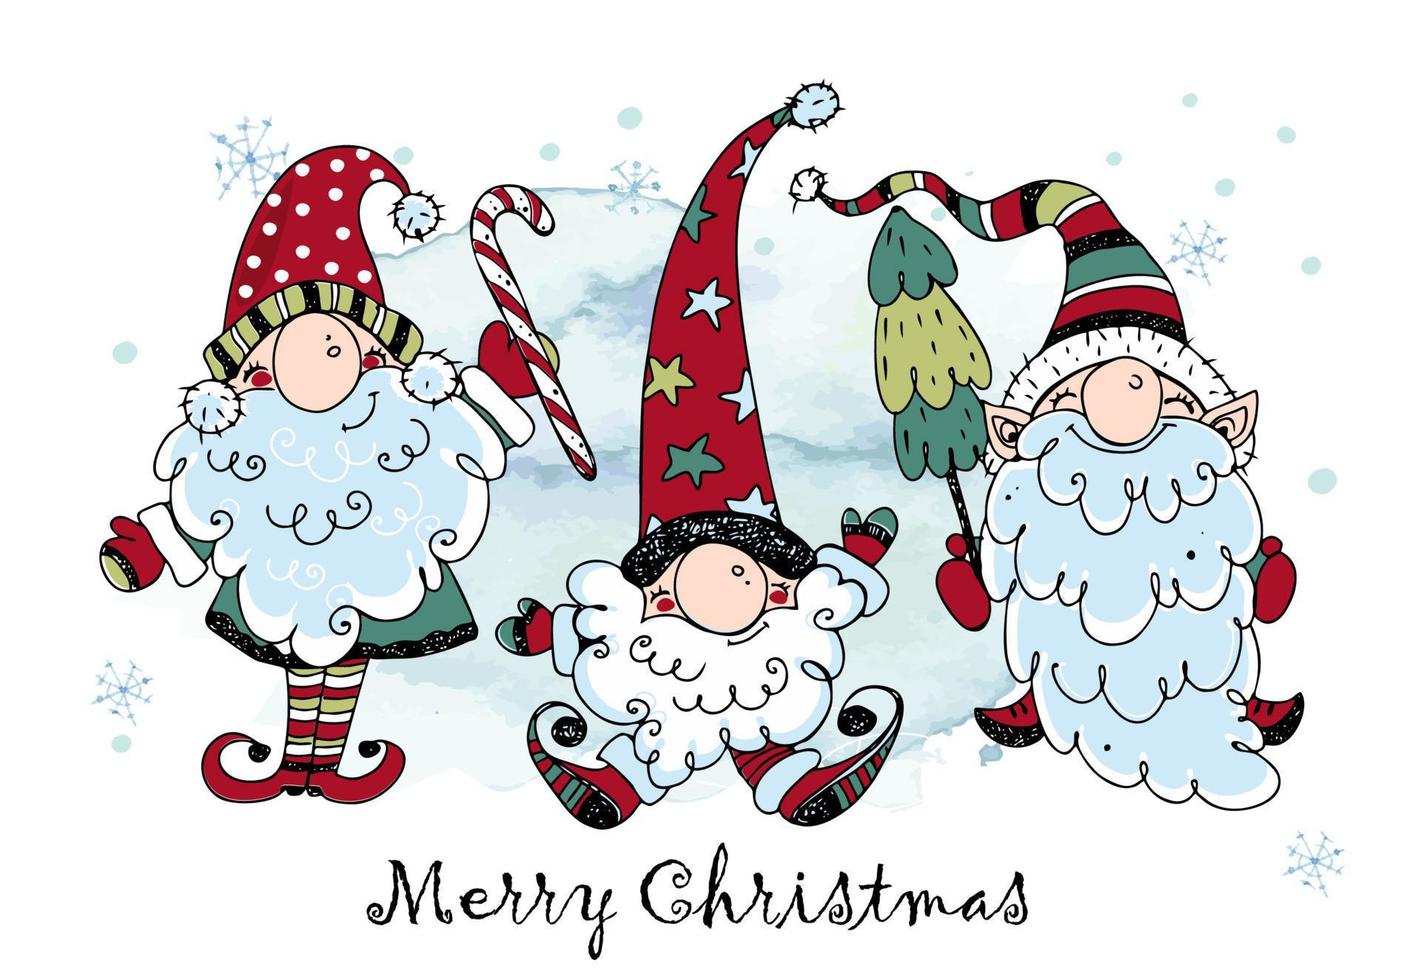 cartão de natal com gnomos nórdicos engraçados com presentes. estilo rabisco. vetor. vetor